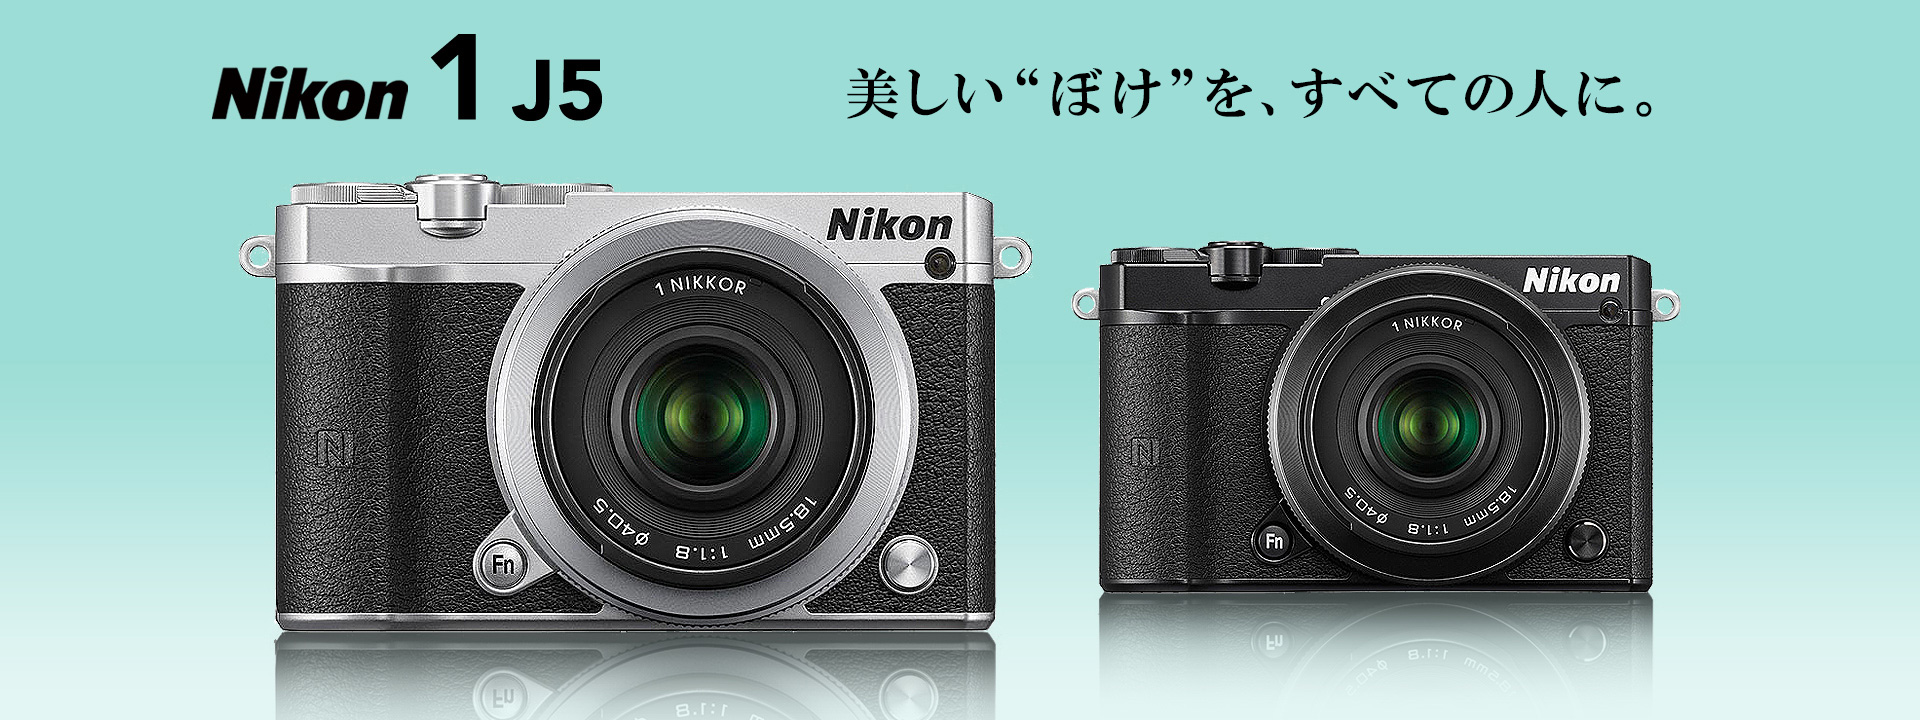 注目の機材】ニコンのミラーレス一眼カメラ・Nikon 1 J5 | GOOPASS 